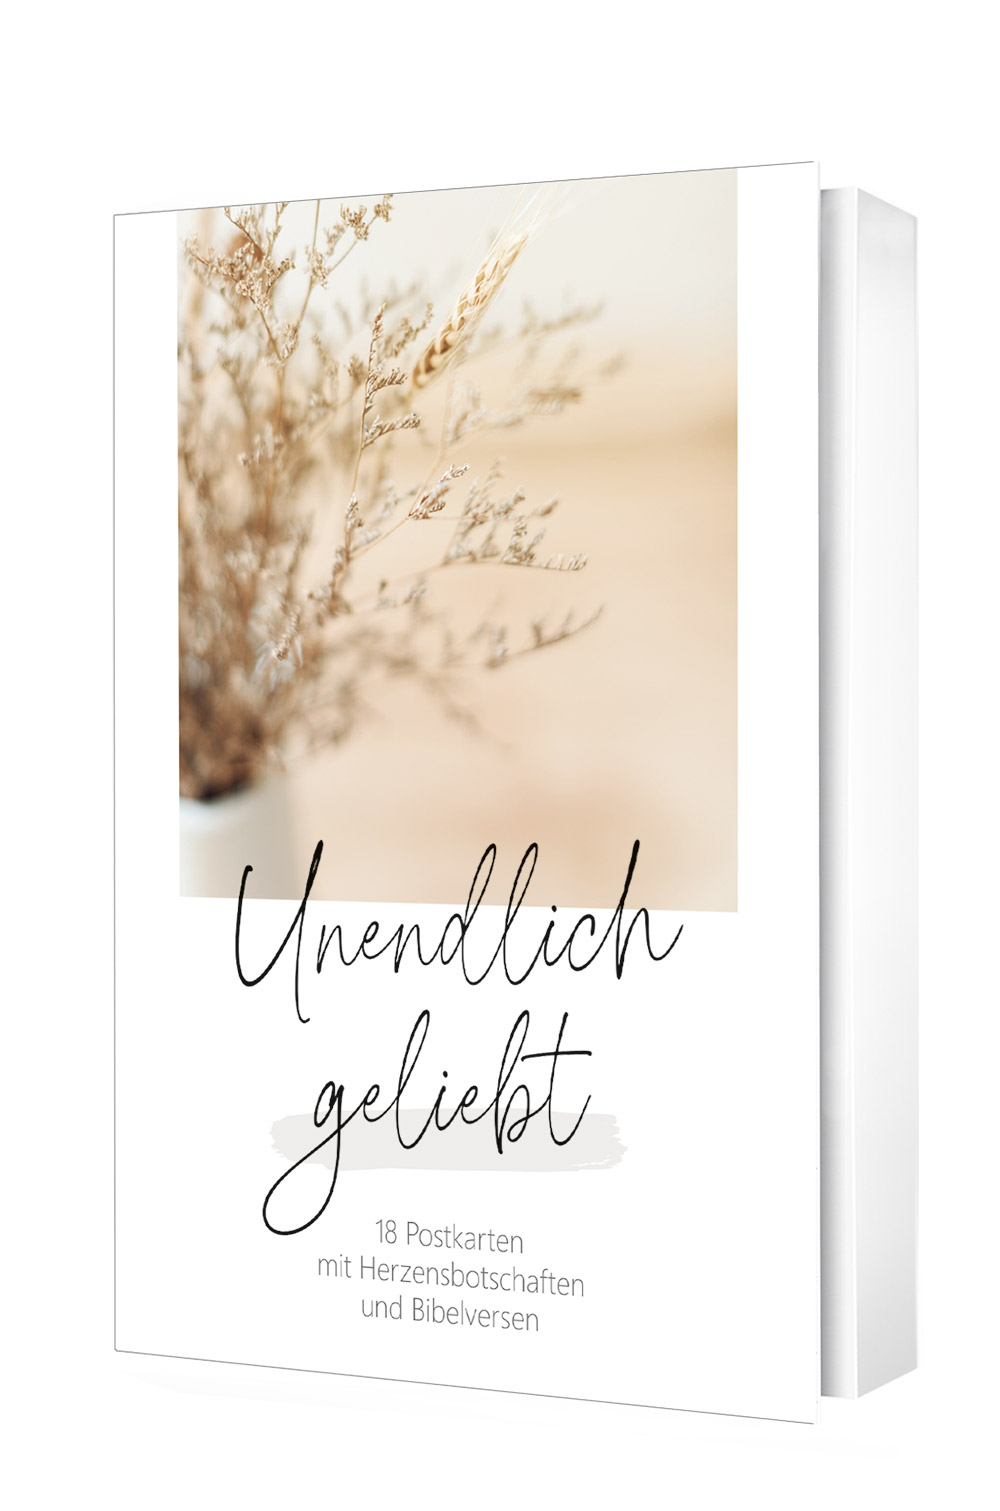 Unendlich geliebt - Postkartenset|18 Postkarten mit Herzensbotschaften und Bibelversen.